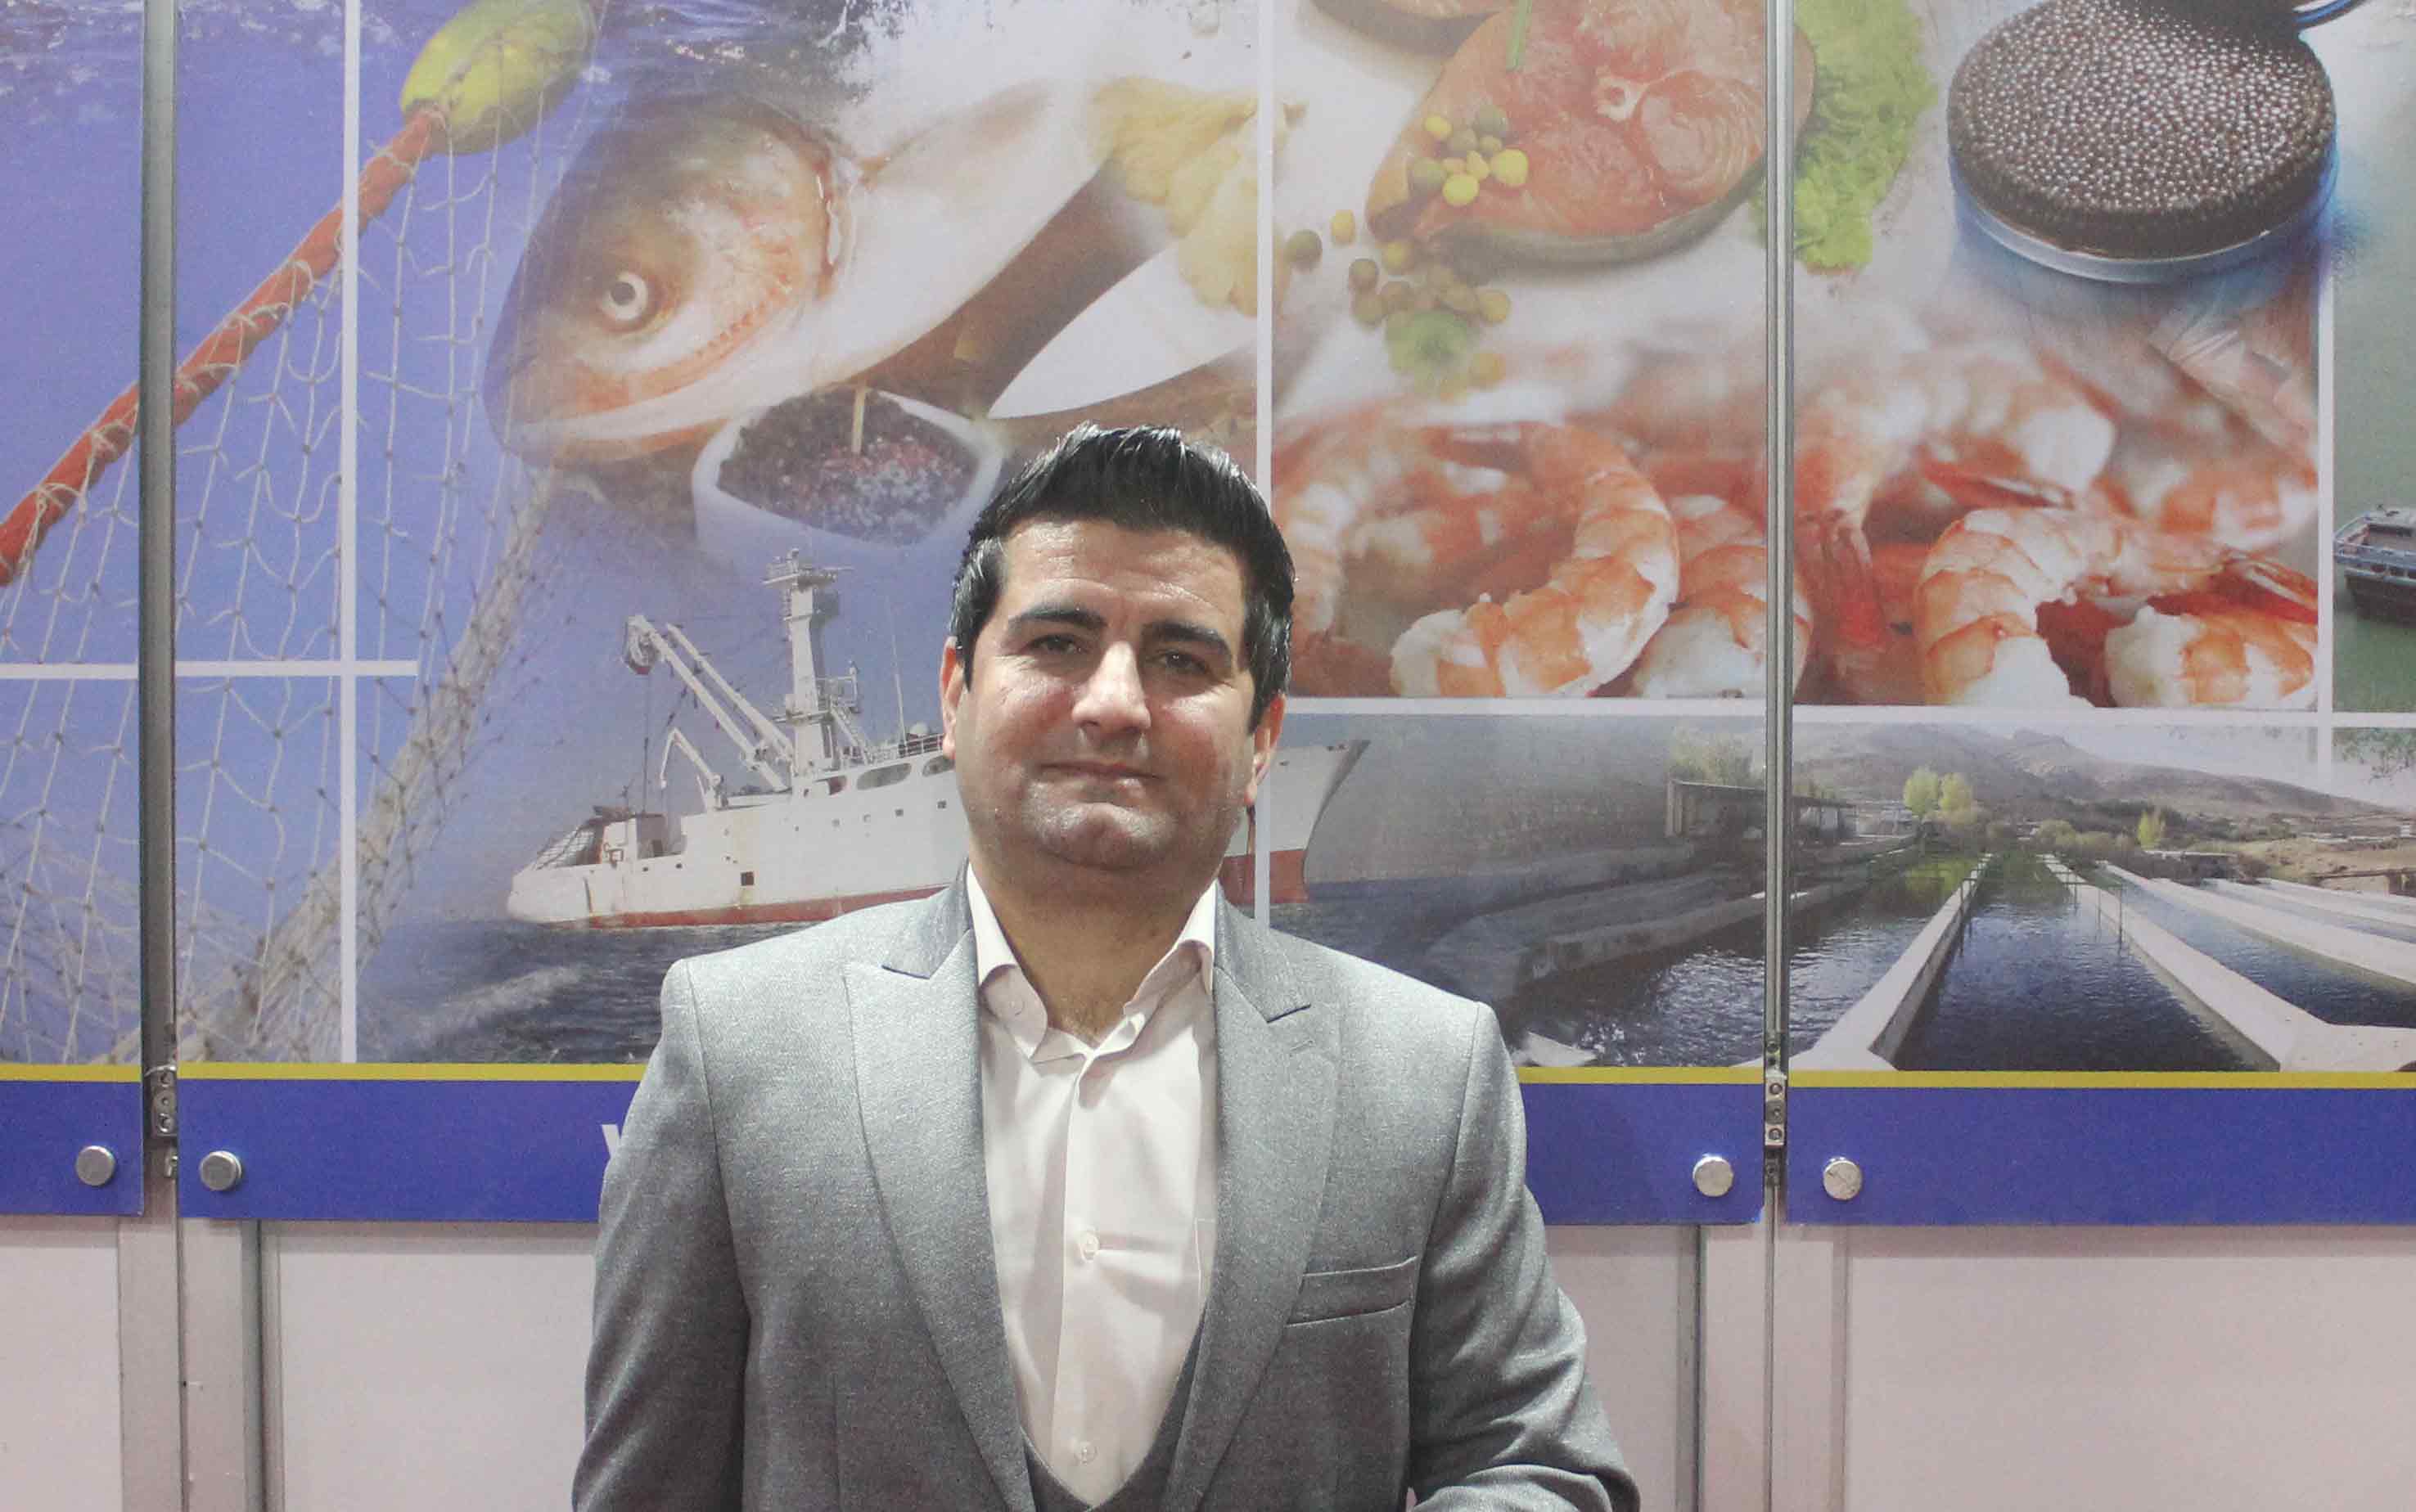 لومینوس اولین تولید کننده رسمی طعمه ماهیگیری در ایران است/ در صدد ایجاد کلاسهای آموزشی برای ماهیگیران مبتدی و حرفه ای هستیم/ شعارهلدینگ لومینوس همیشه و همه جا با لومینوس بدرخشید 